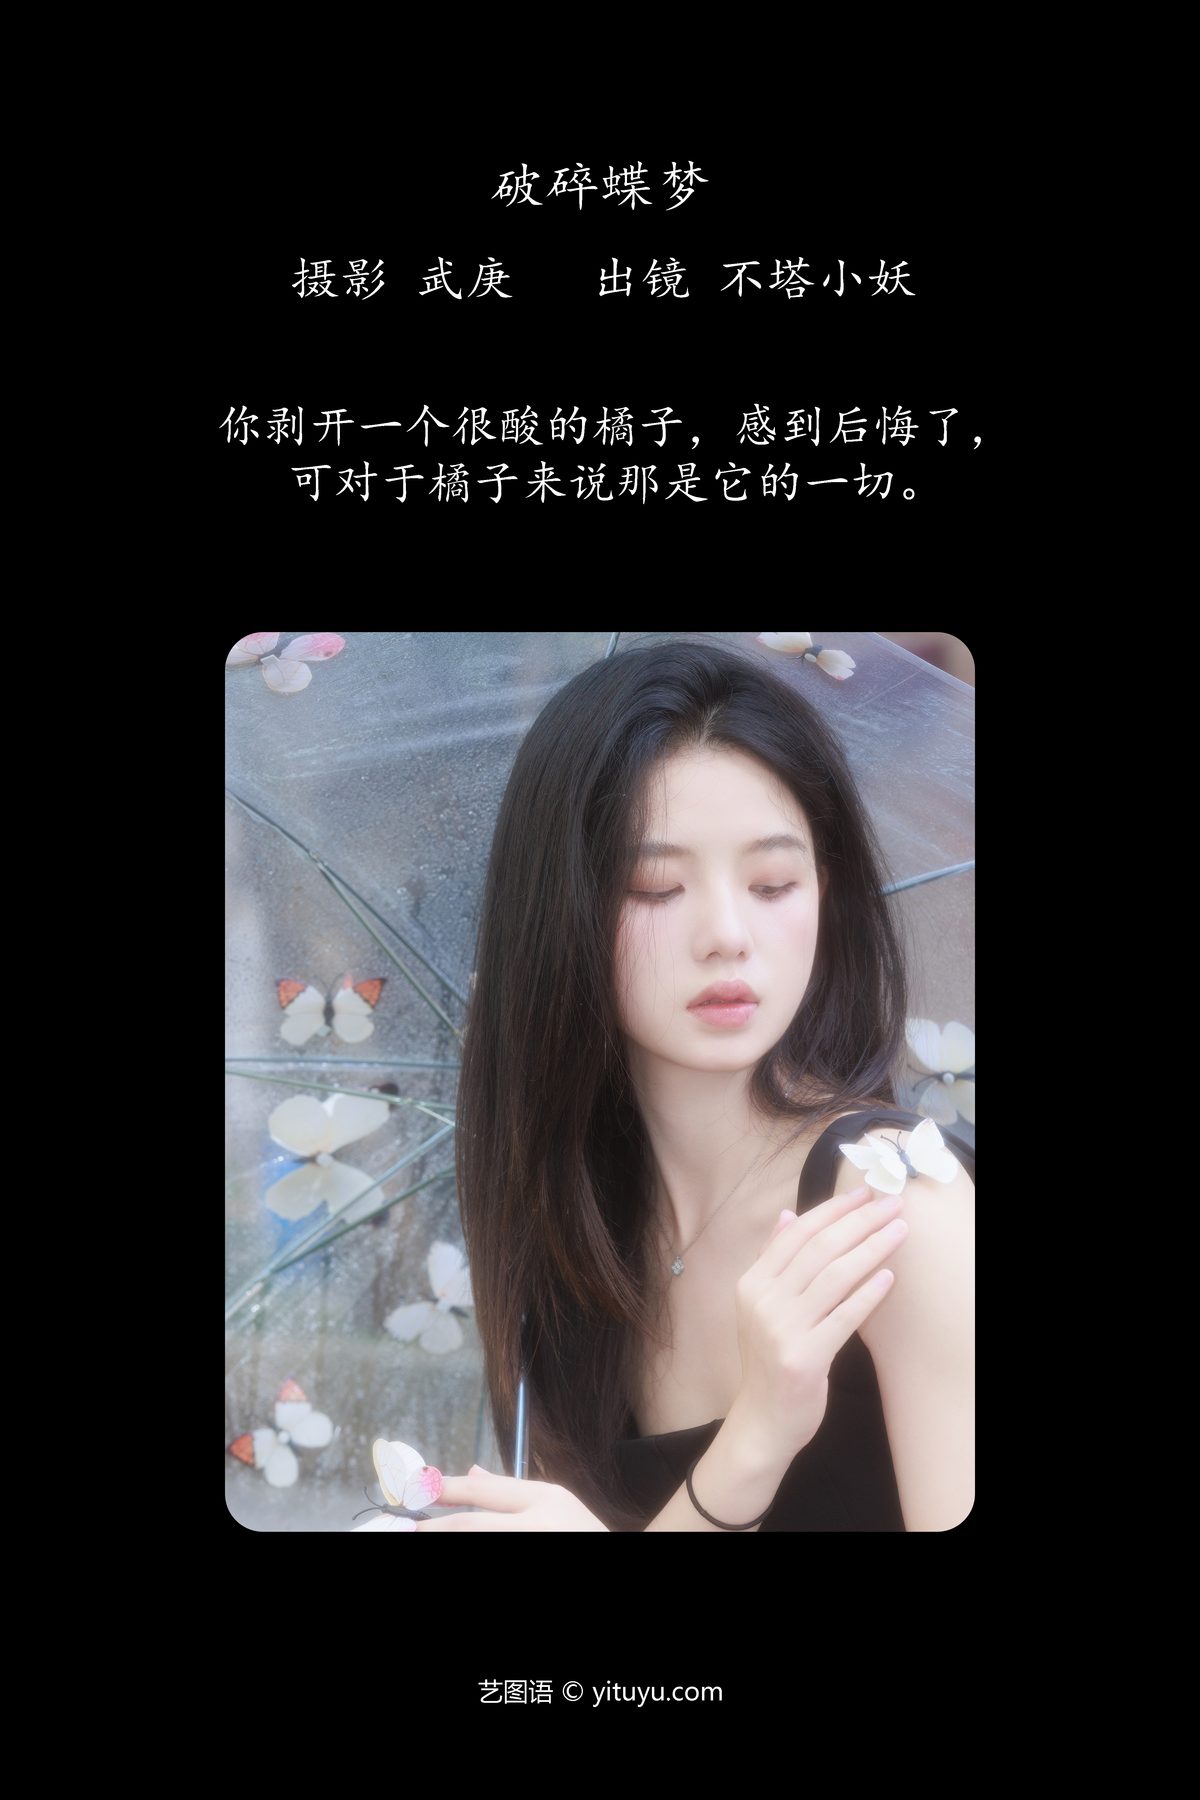 YiTuYu艺图语 Vol 5616 Bu Ta Xiao Yao 0002 2556828284.jpg